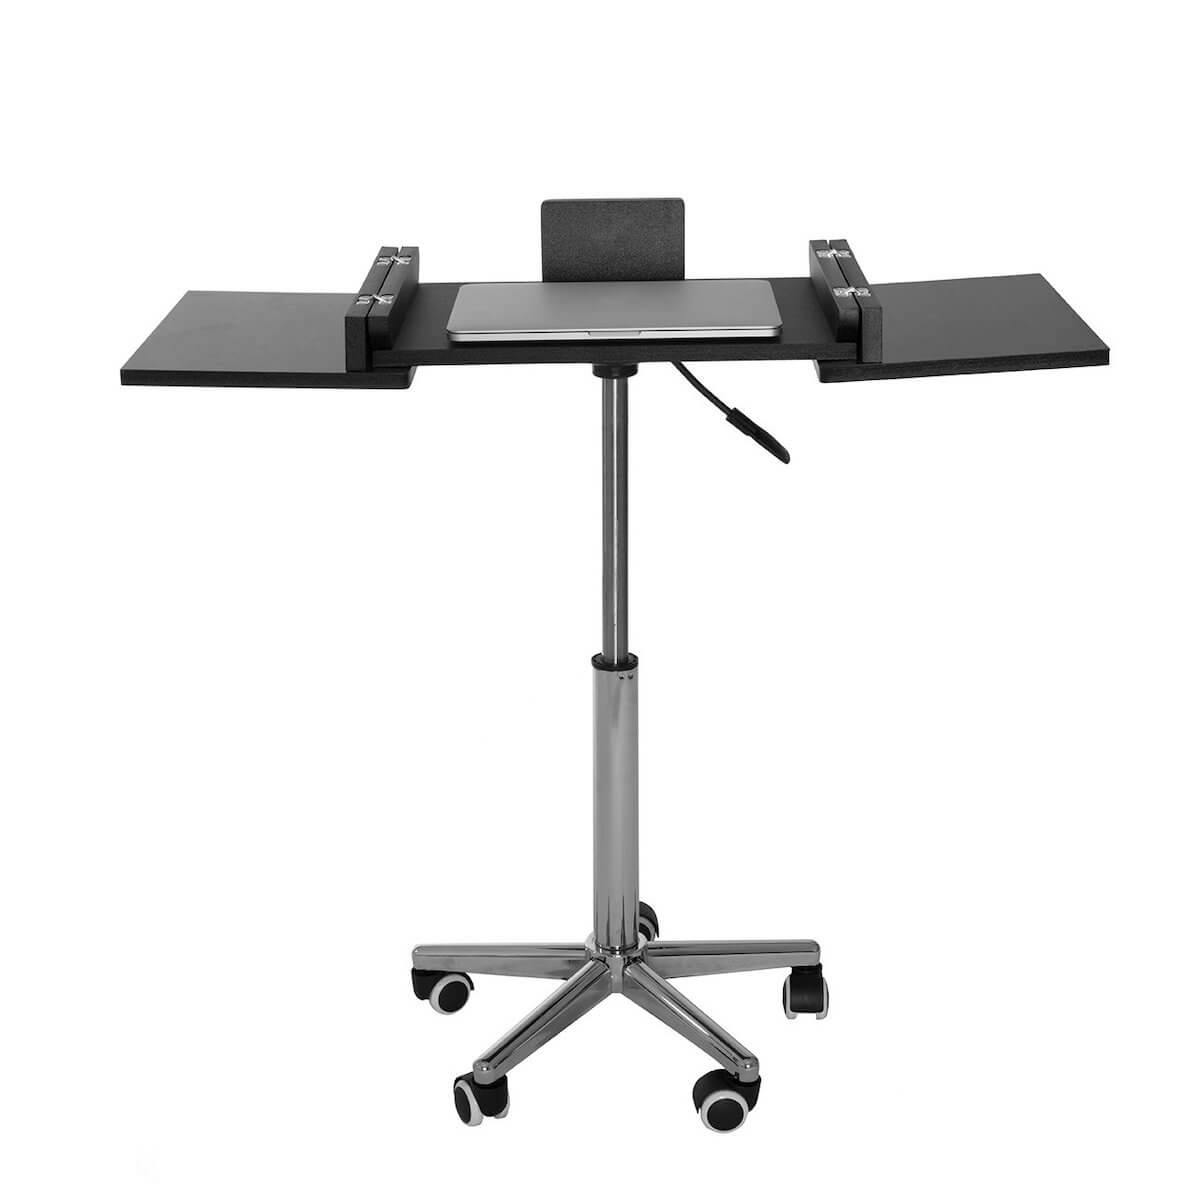 Techni Mobili Graphite Folding Table Laptop Cart RTA-B006-GPH06 Expanded